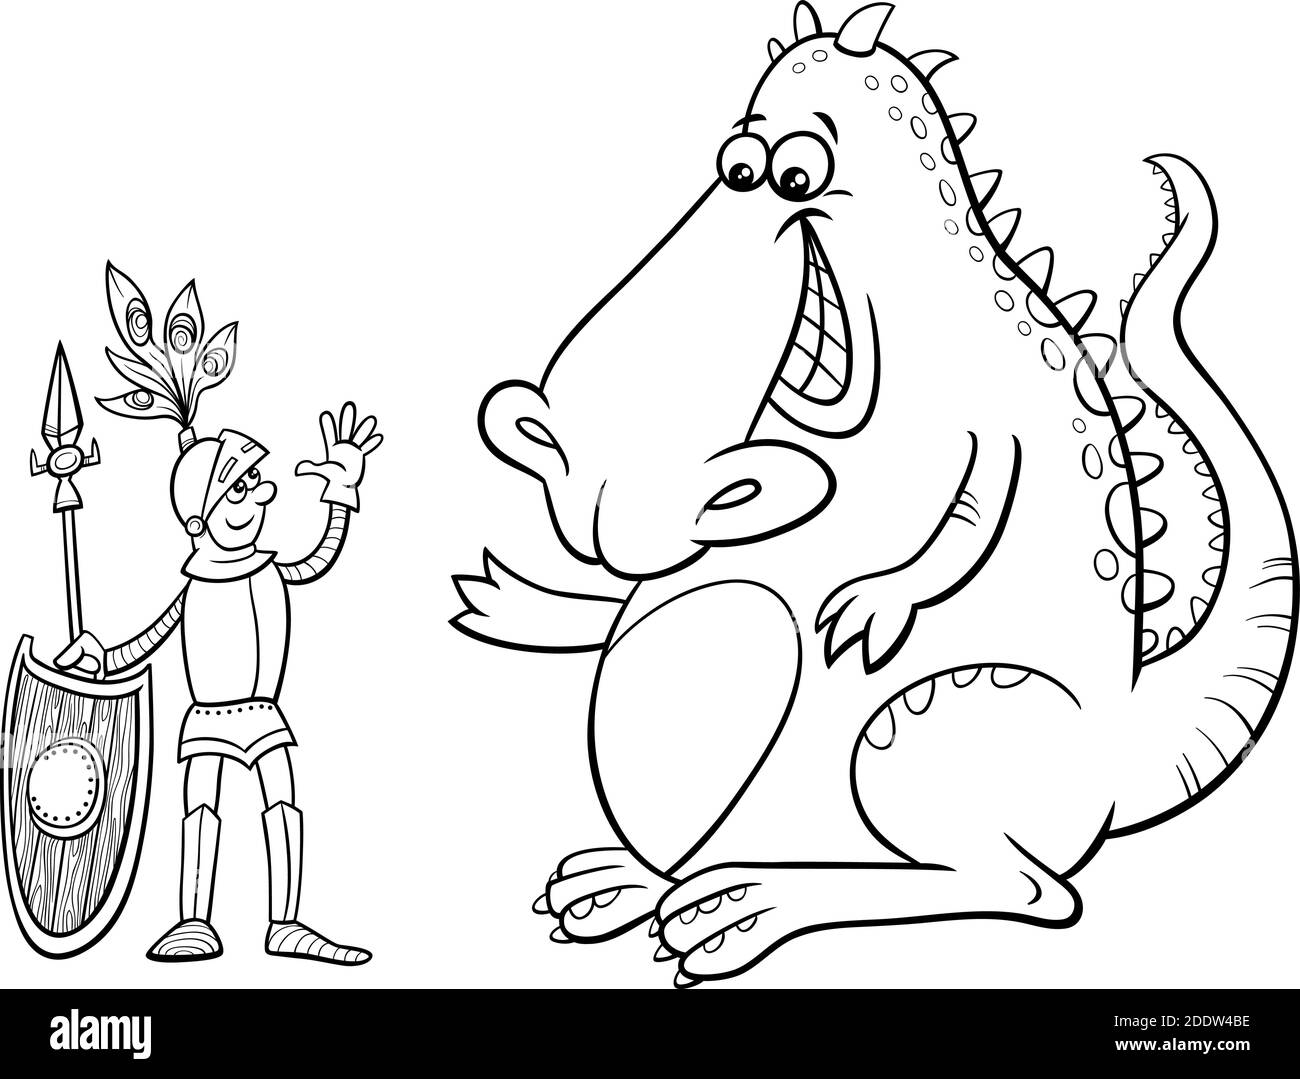 Dessin animé noir et blanc illustration humoristique du dragon et du chevalier avoir une page de livre de coloriage de discussion amicale Illustration de Vecteur